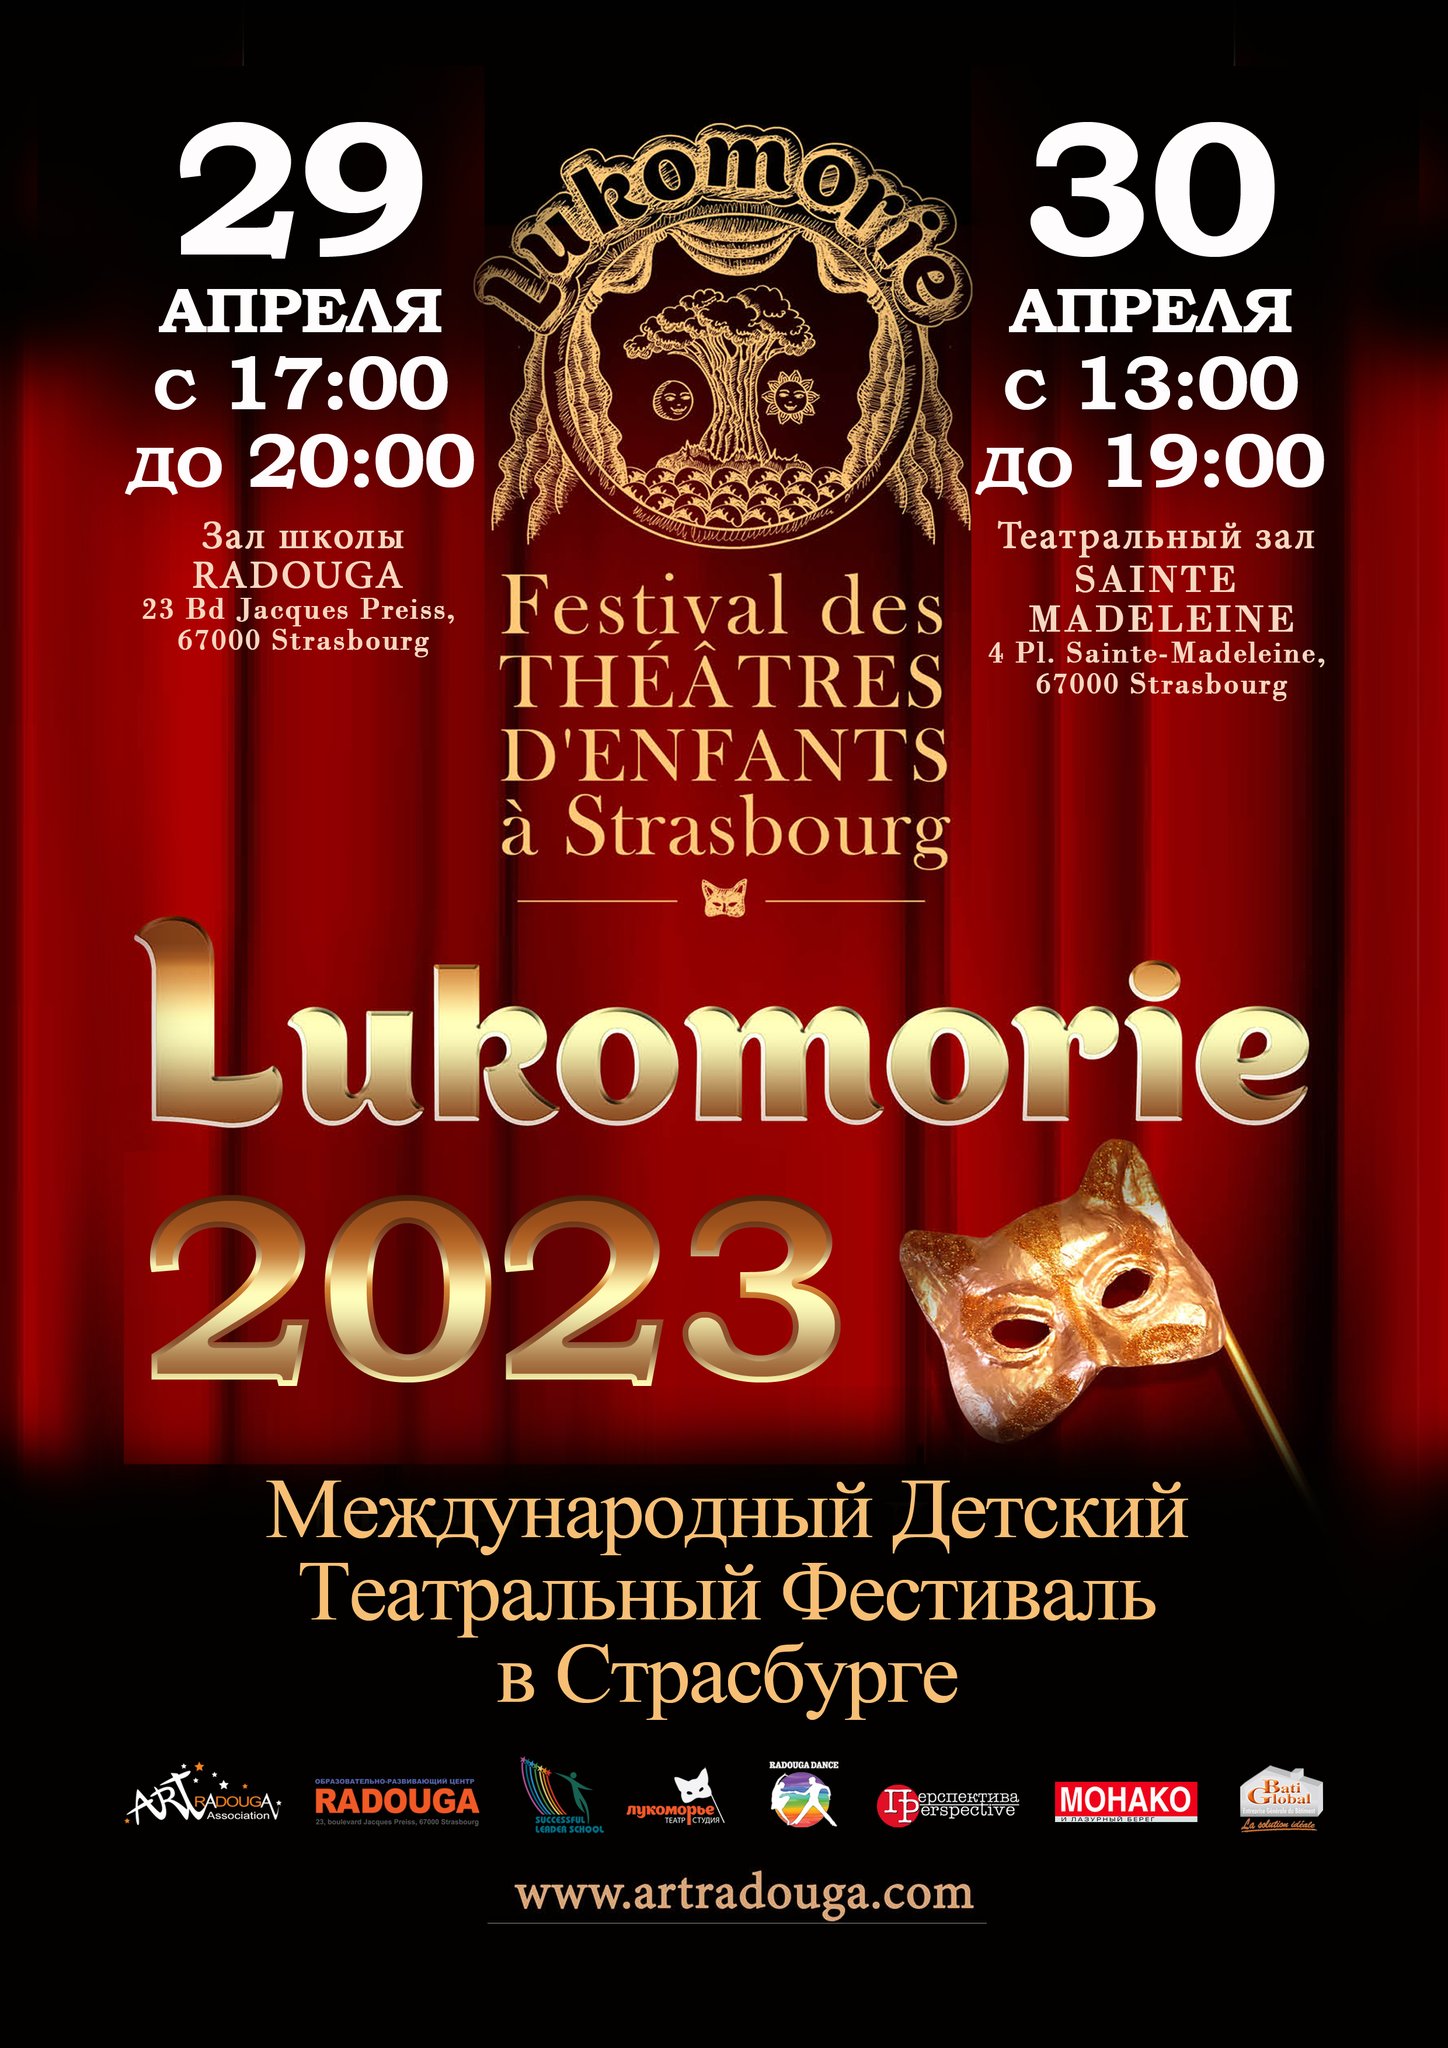 До 31 марта 2023 г. - прием заявок на участие во II Международном детском театральном фестивале «Лукоморье» в Страсбурге